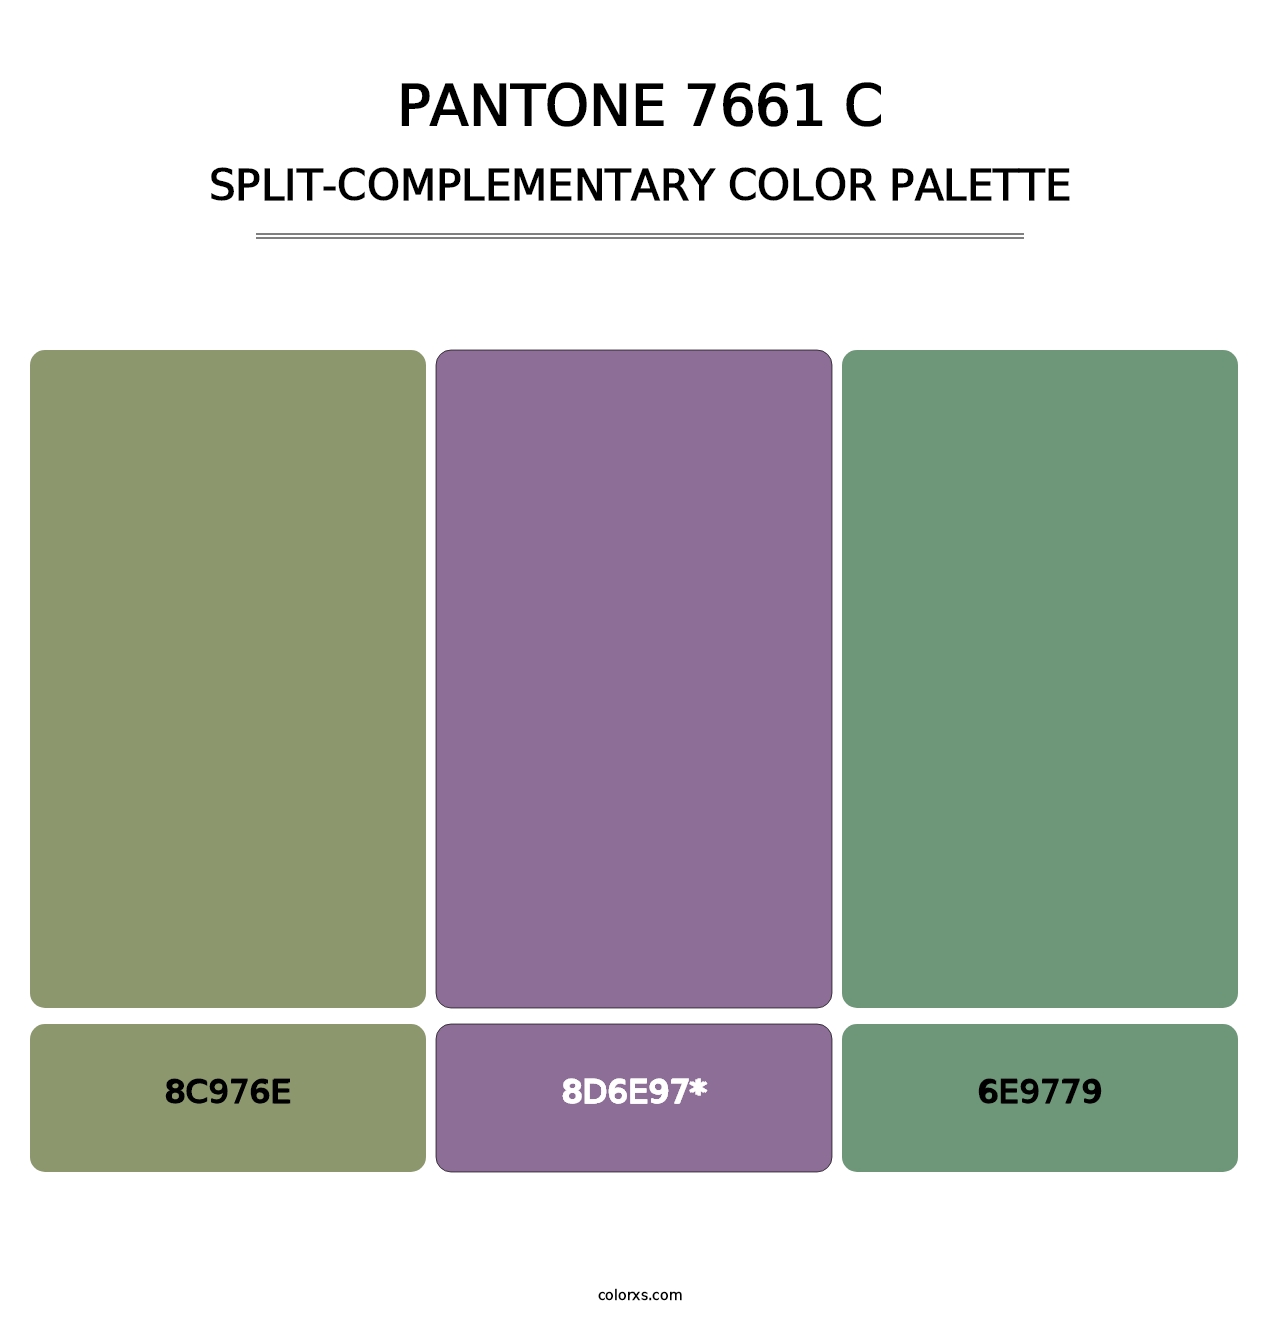 PANTONE 7661 C - Split-Complementary Color Palette